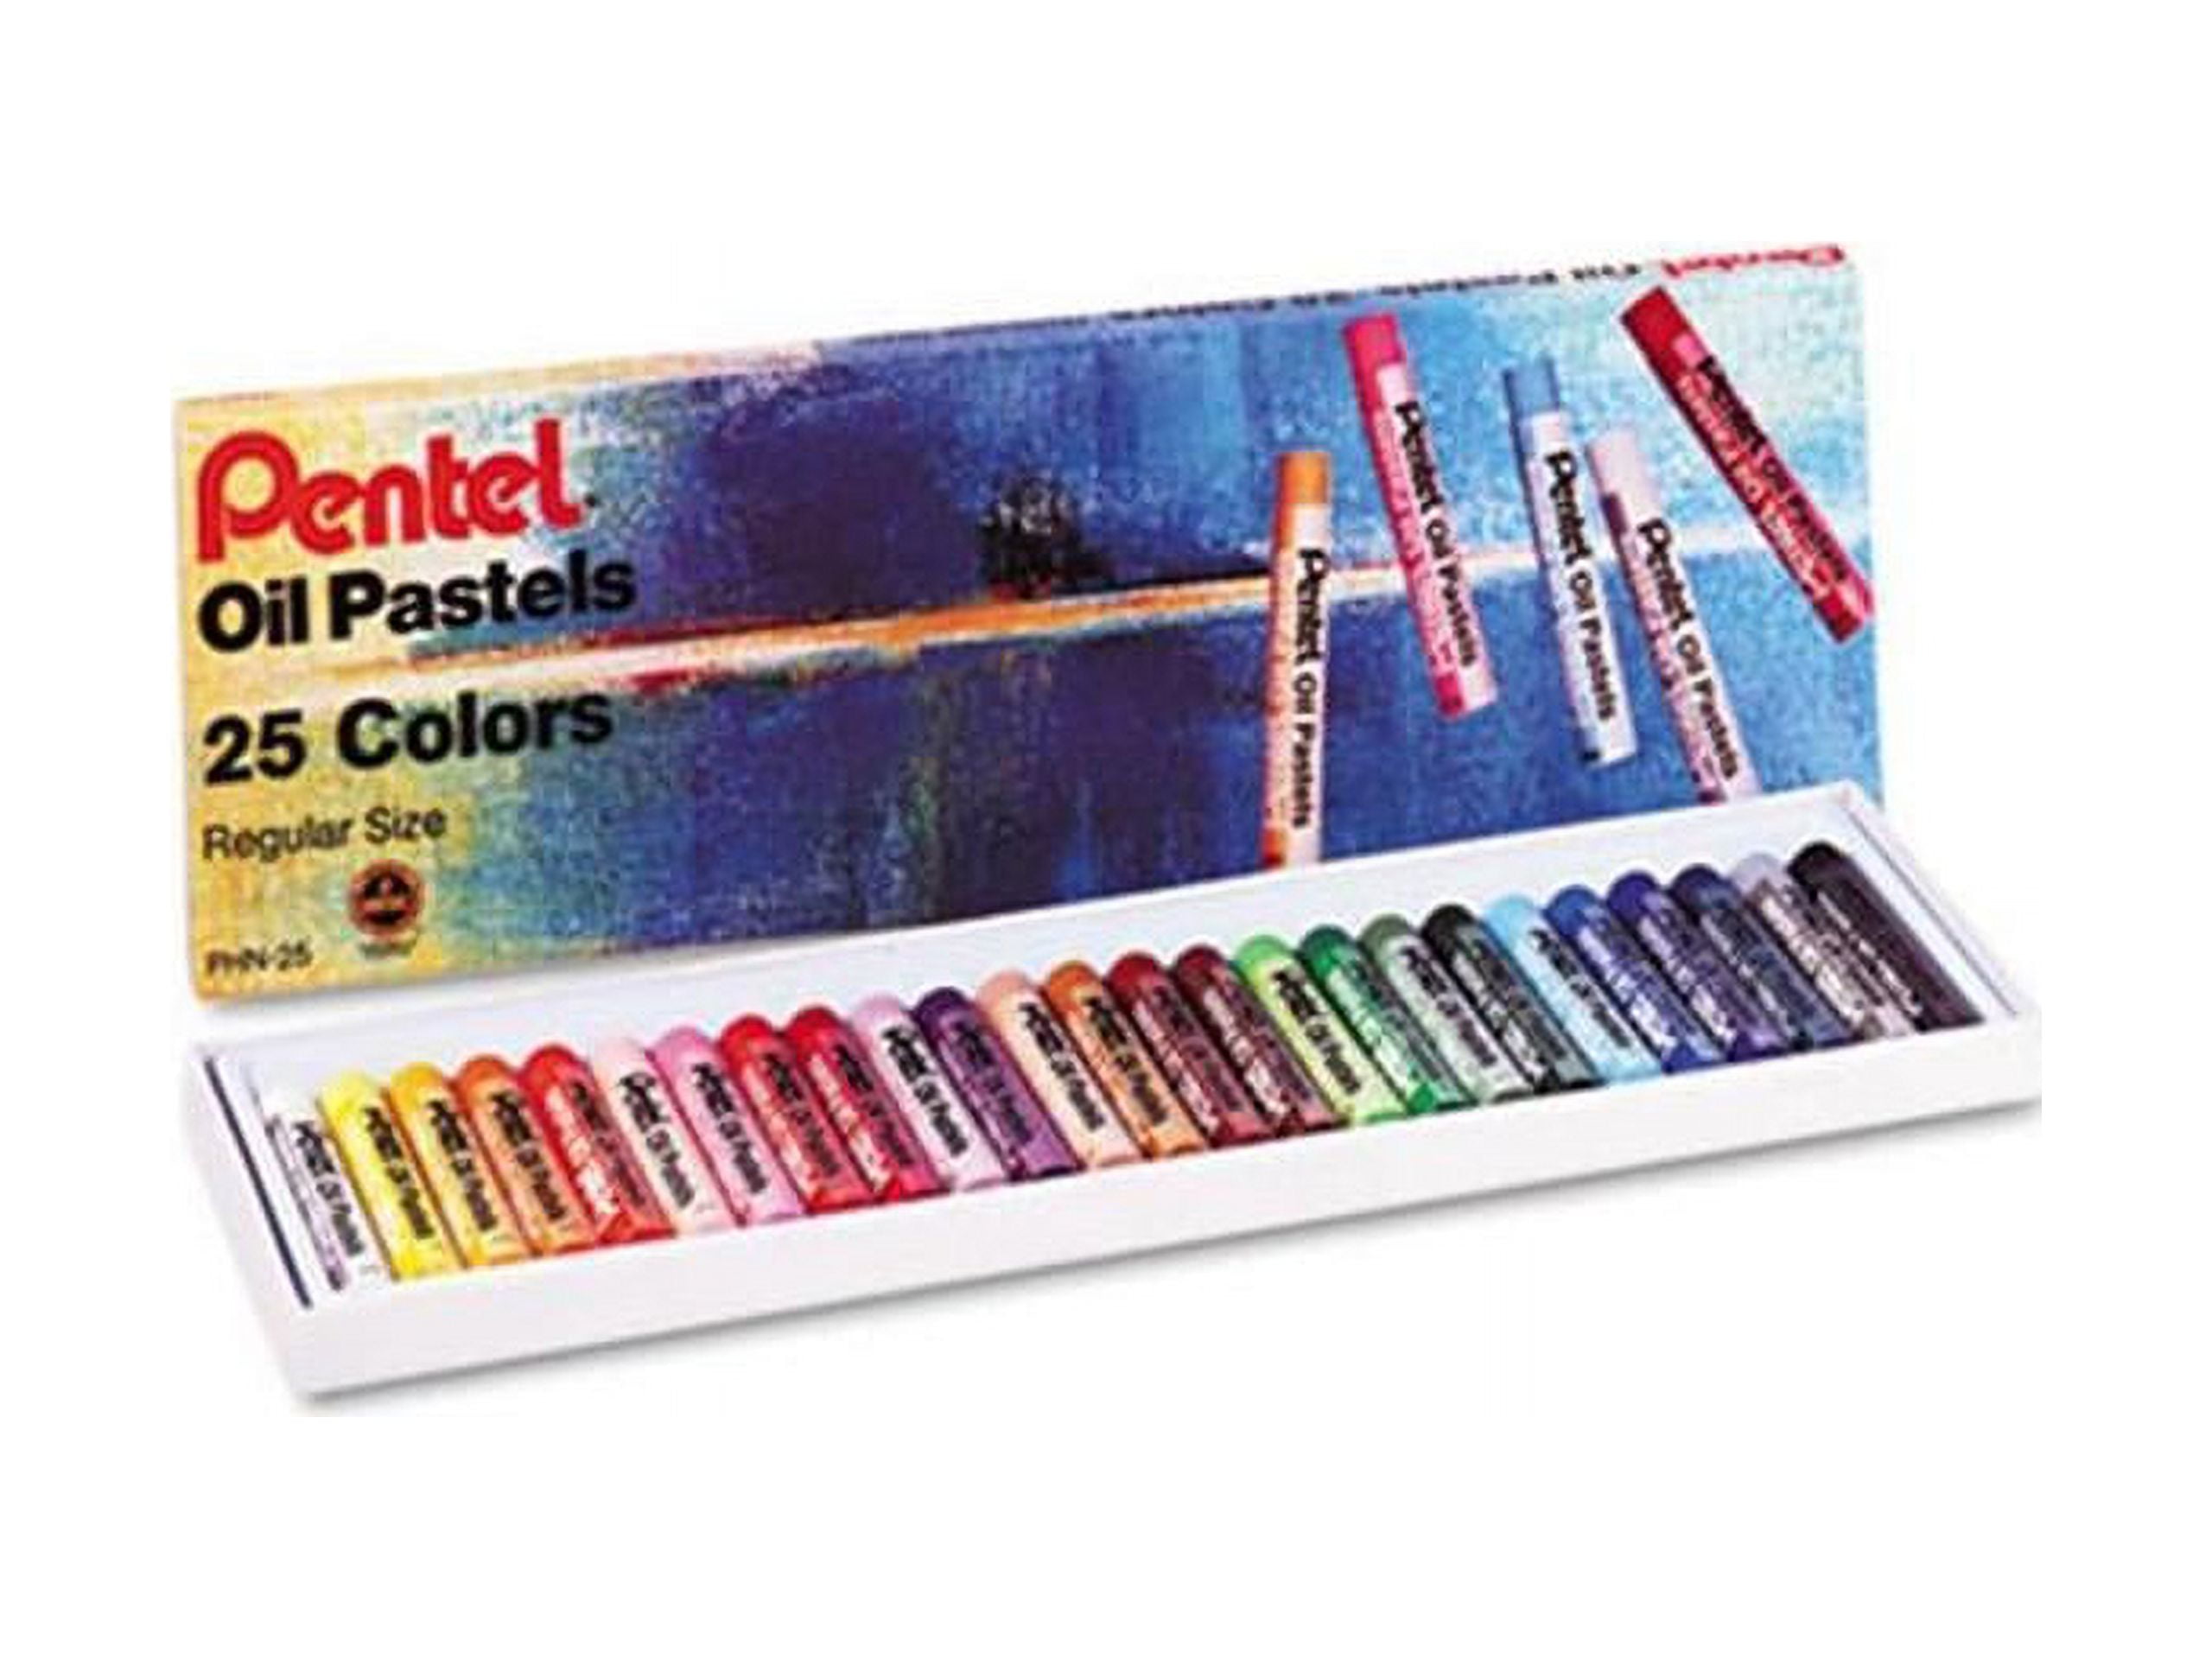 Pentel Oil Pastel 25 Set - The Deckle Edge